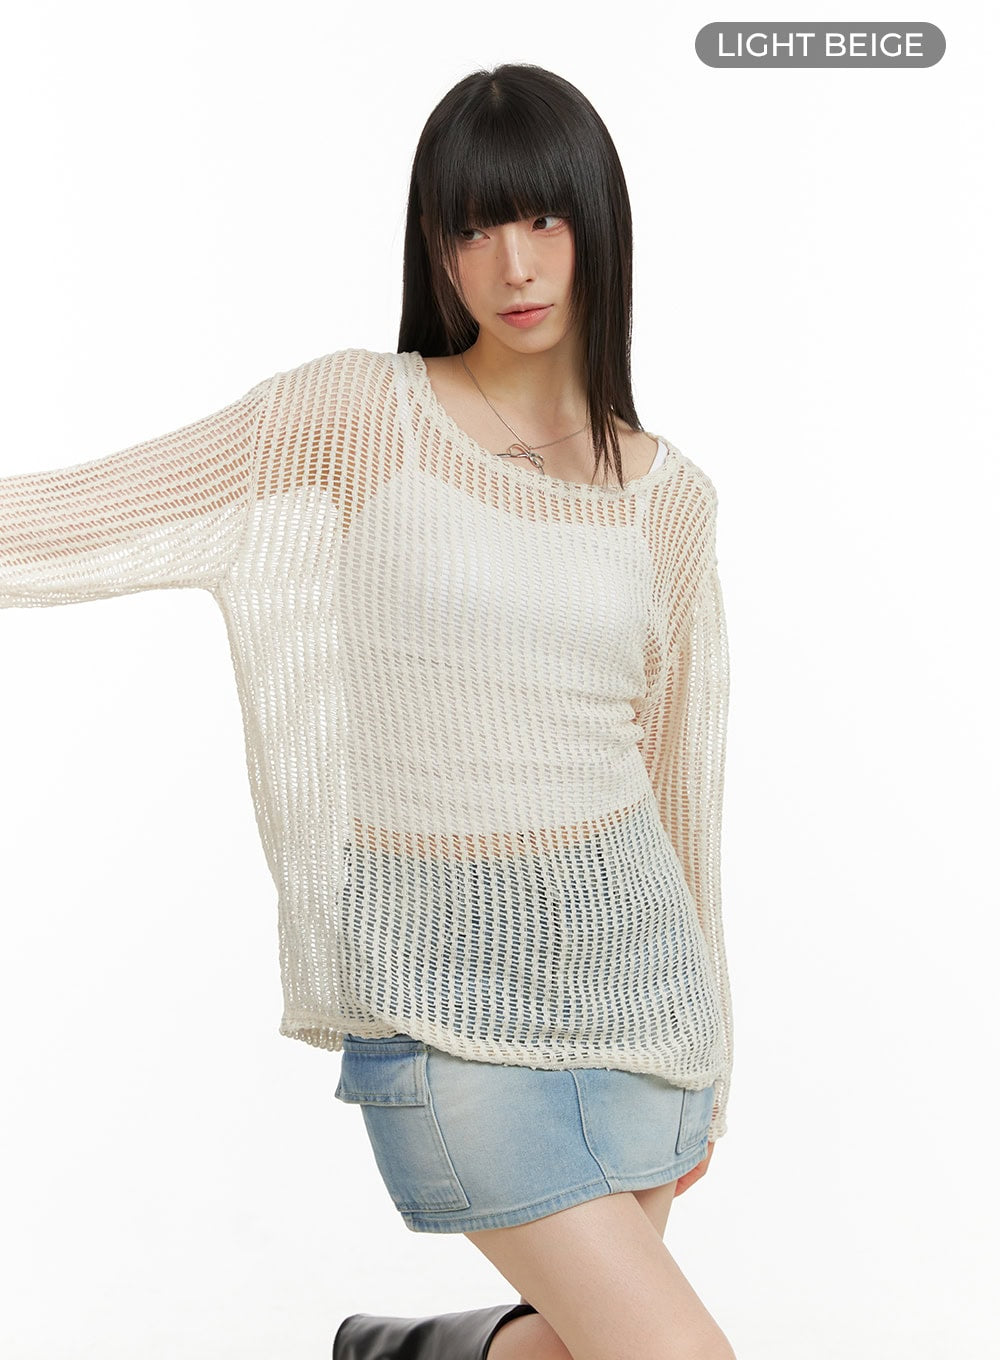 summer-mesh-knit-sweater-cu424 / Light beige